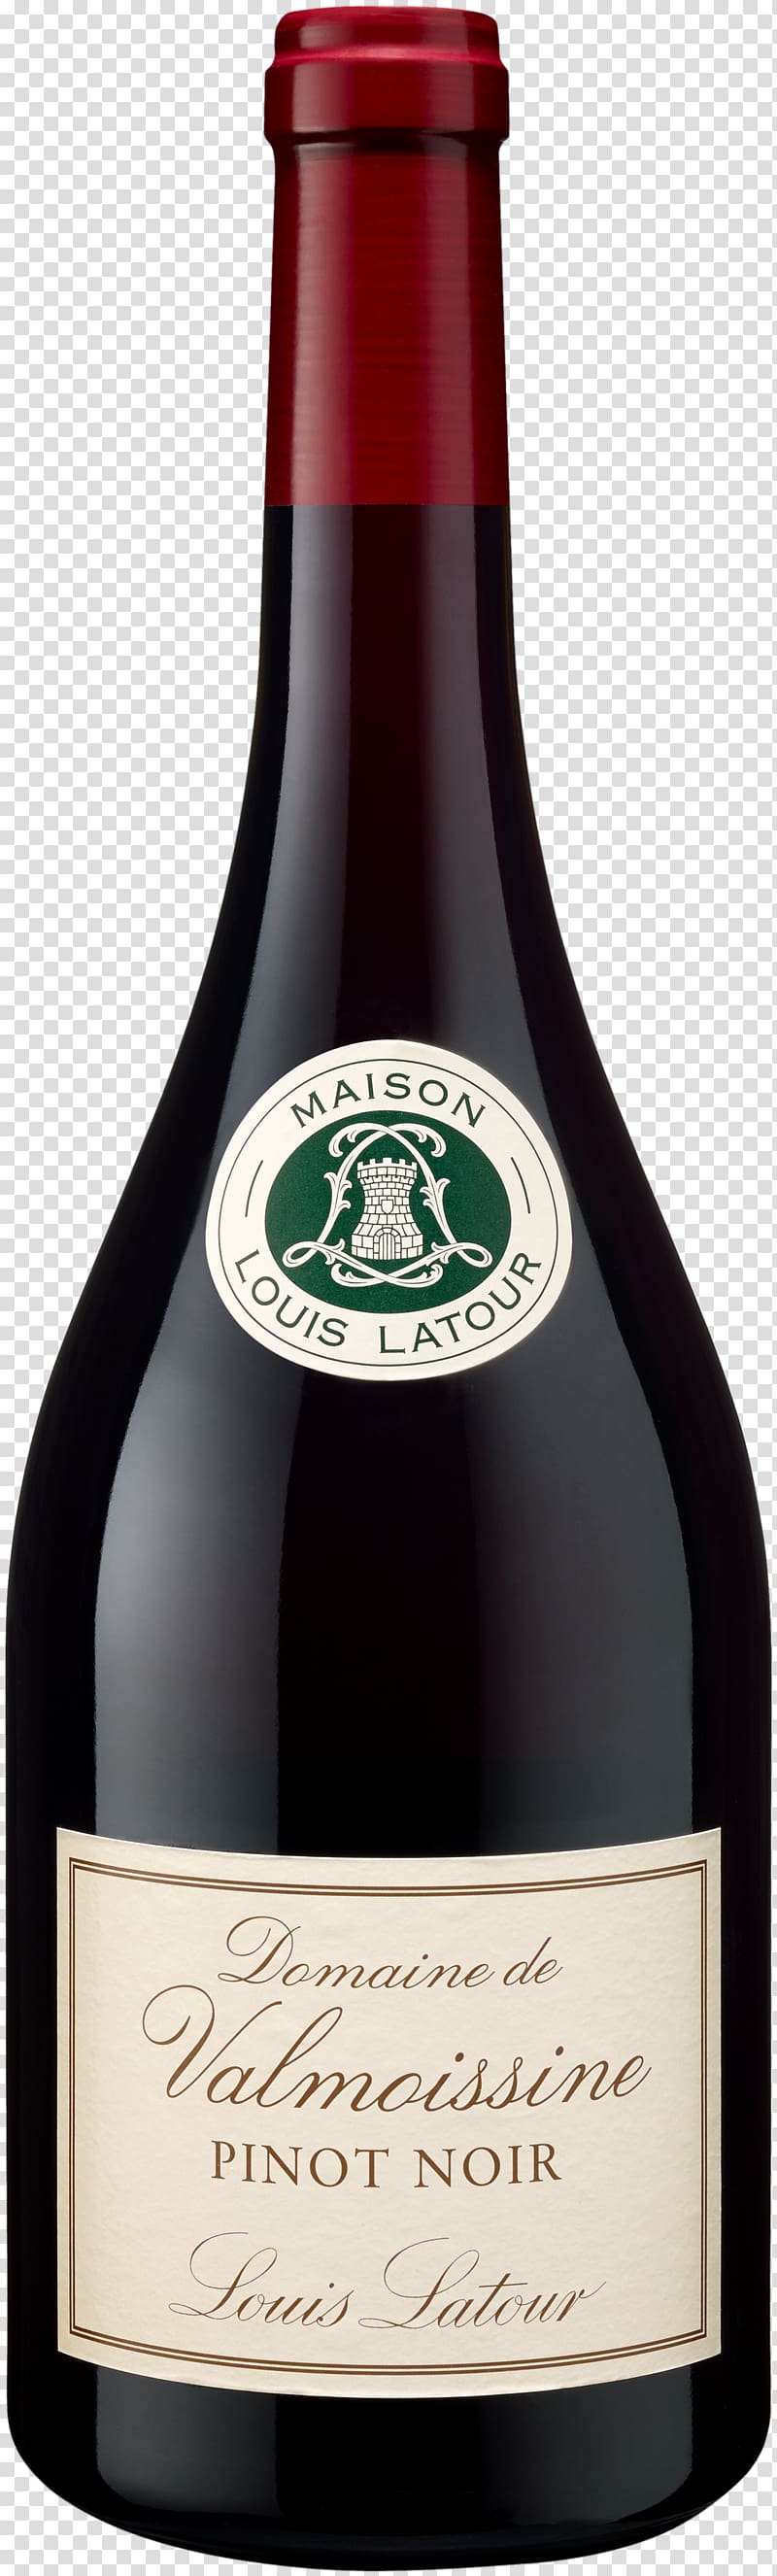 Maison Louis Latour Burgundy wine Domaine de Valmoissine Pinot noir, pinot noir transparent background PNG clipart